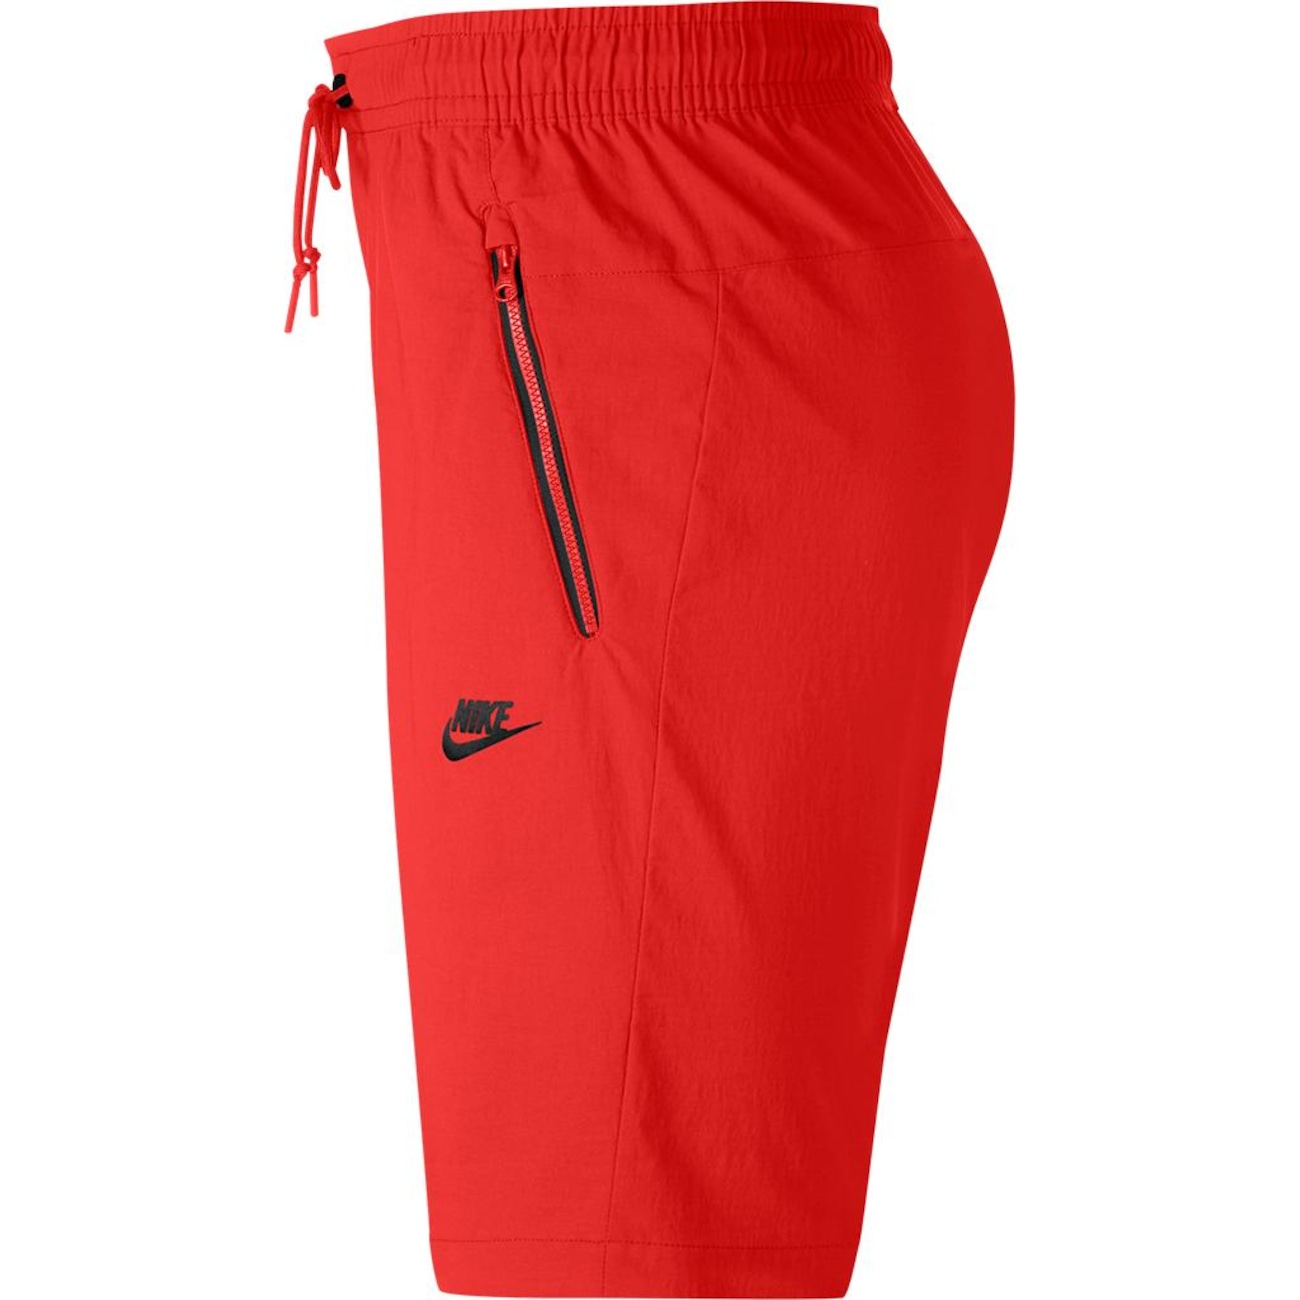 Shorts Nike Sportswear Woven Street Masculino - Foto 3